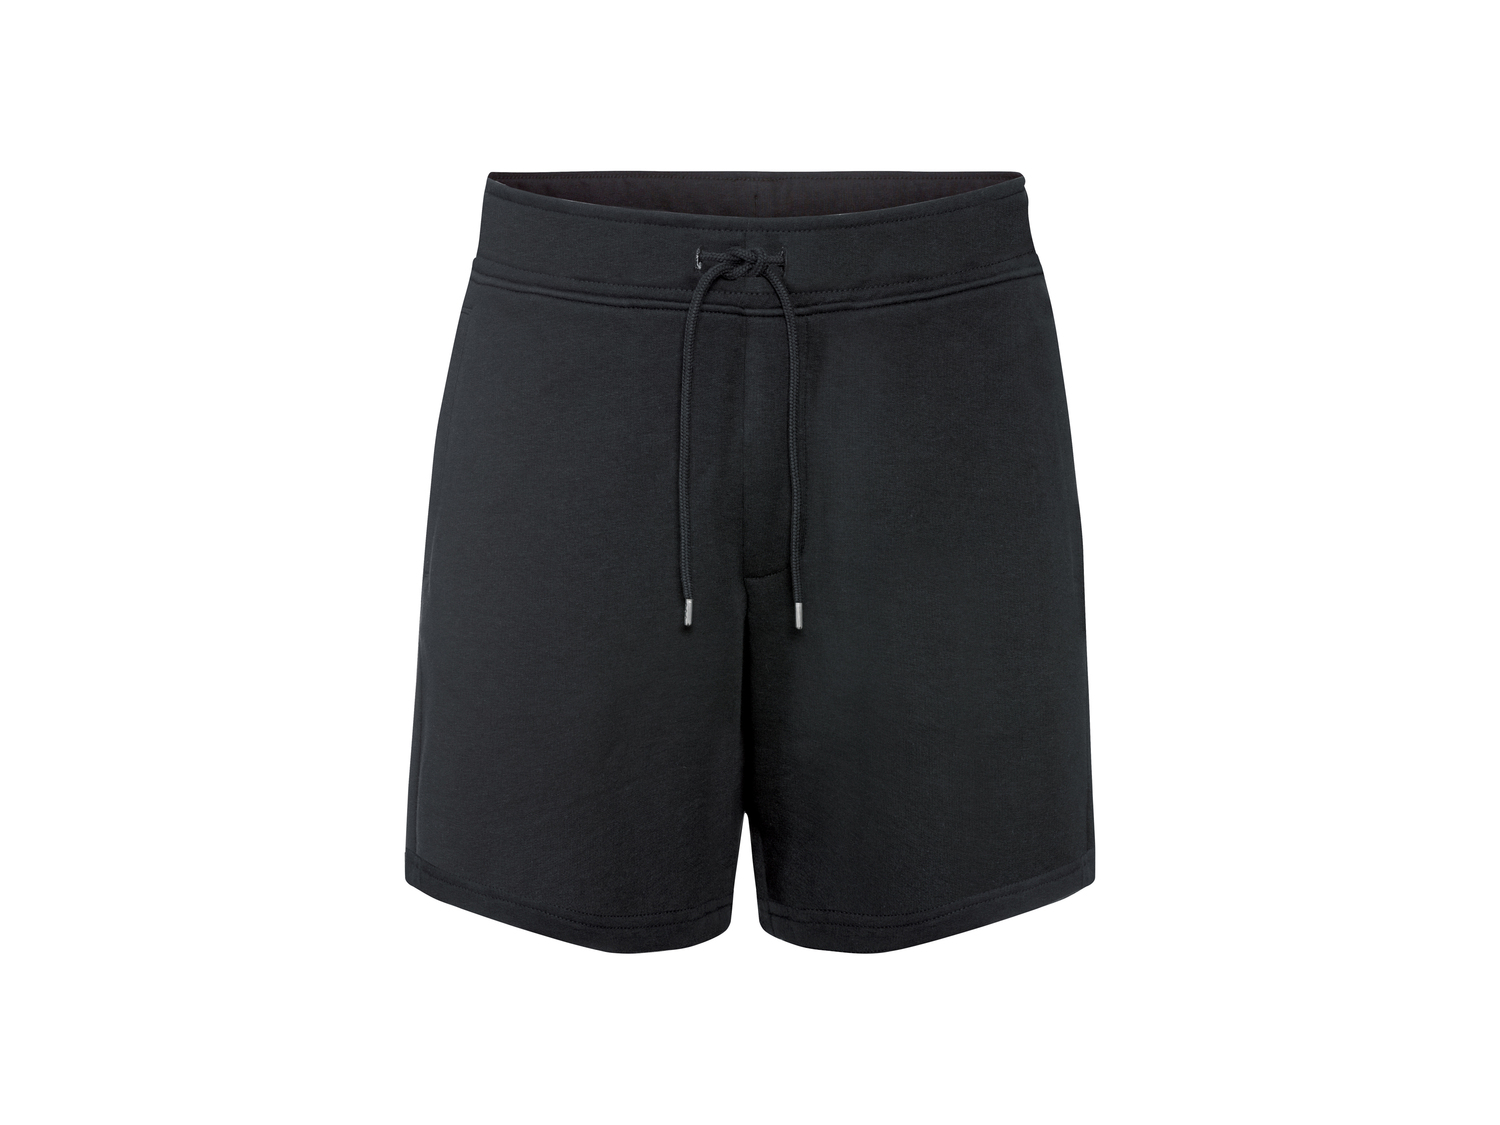 Shorts da uomo Lidl Livergy, prezzo 4.99 € 
Misure: S-XXL
Taglie disponibili

Caratteristiche

- ...